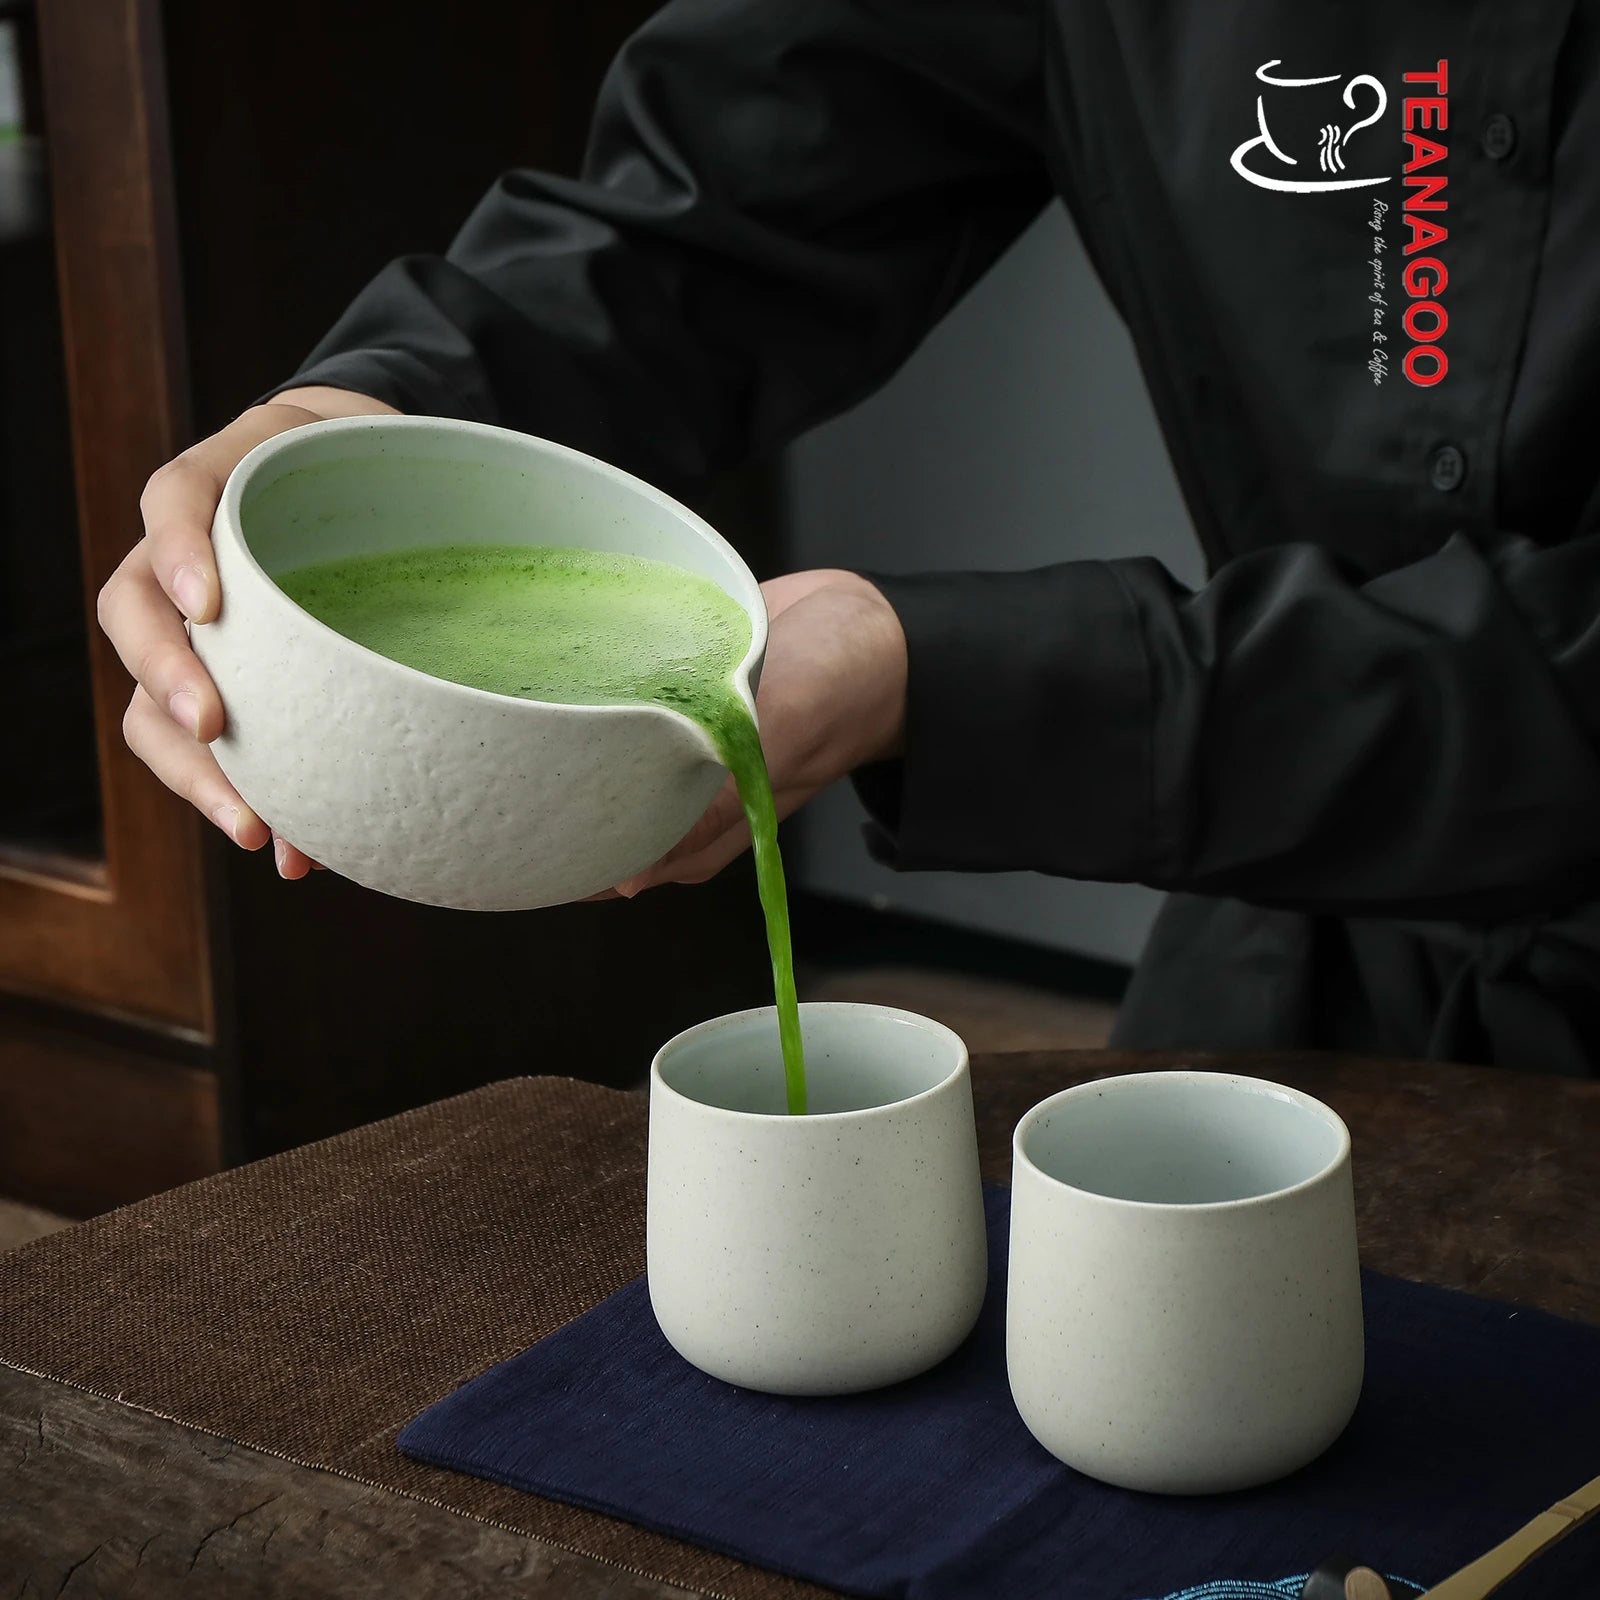  TEANAGOO Juego de té matcha, juego de té japonés